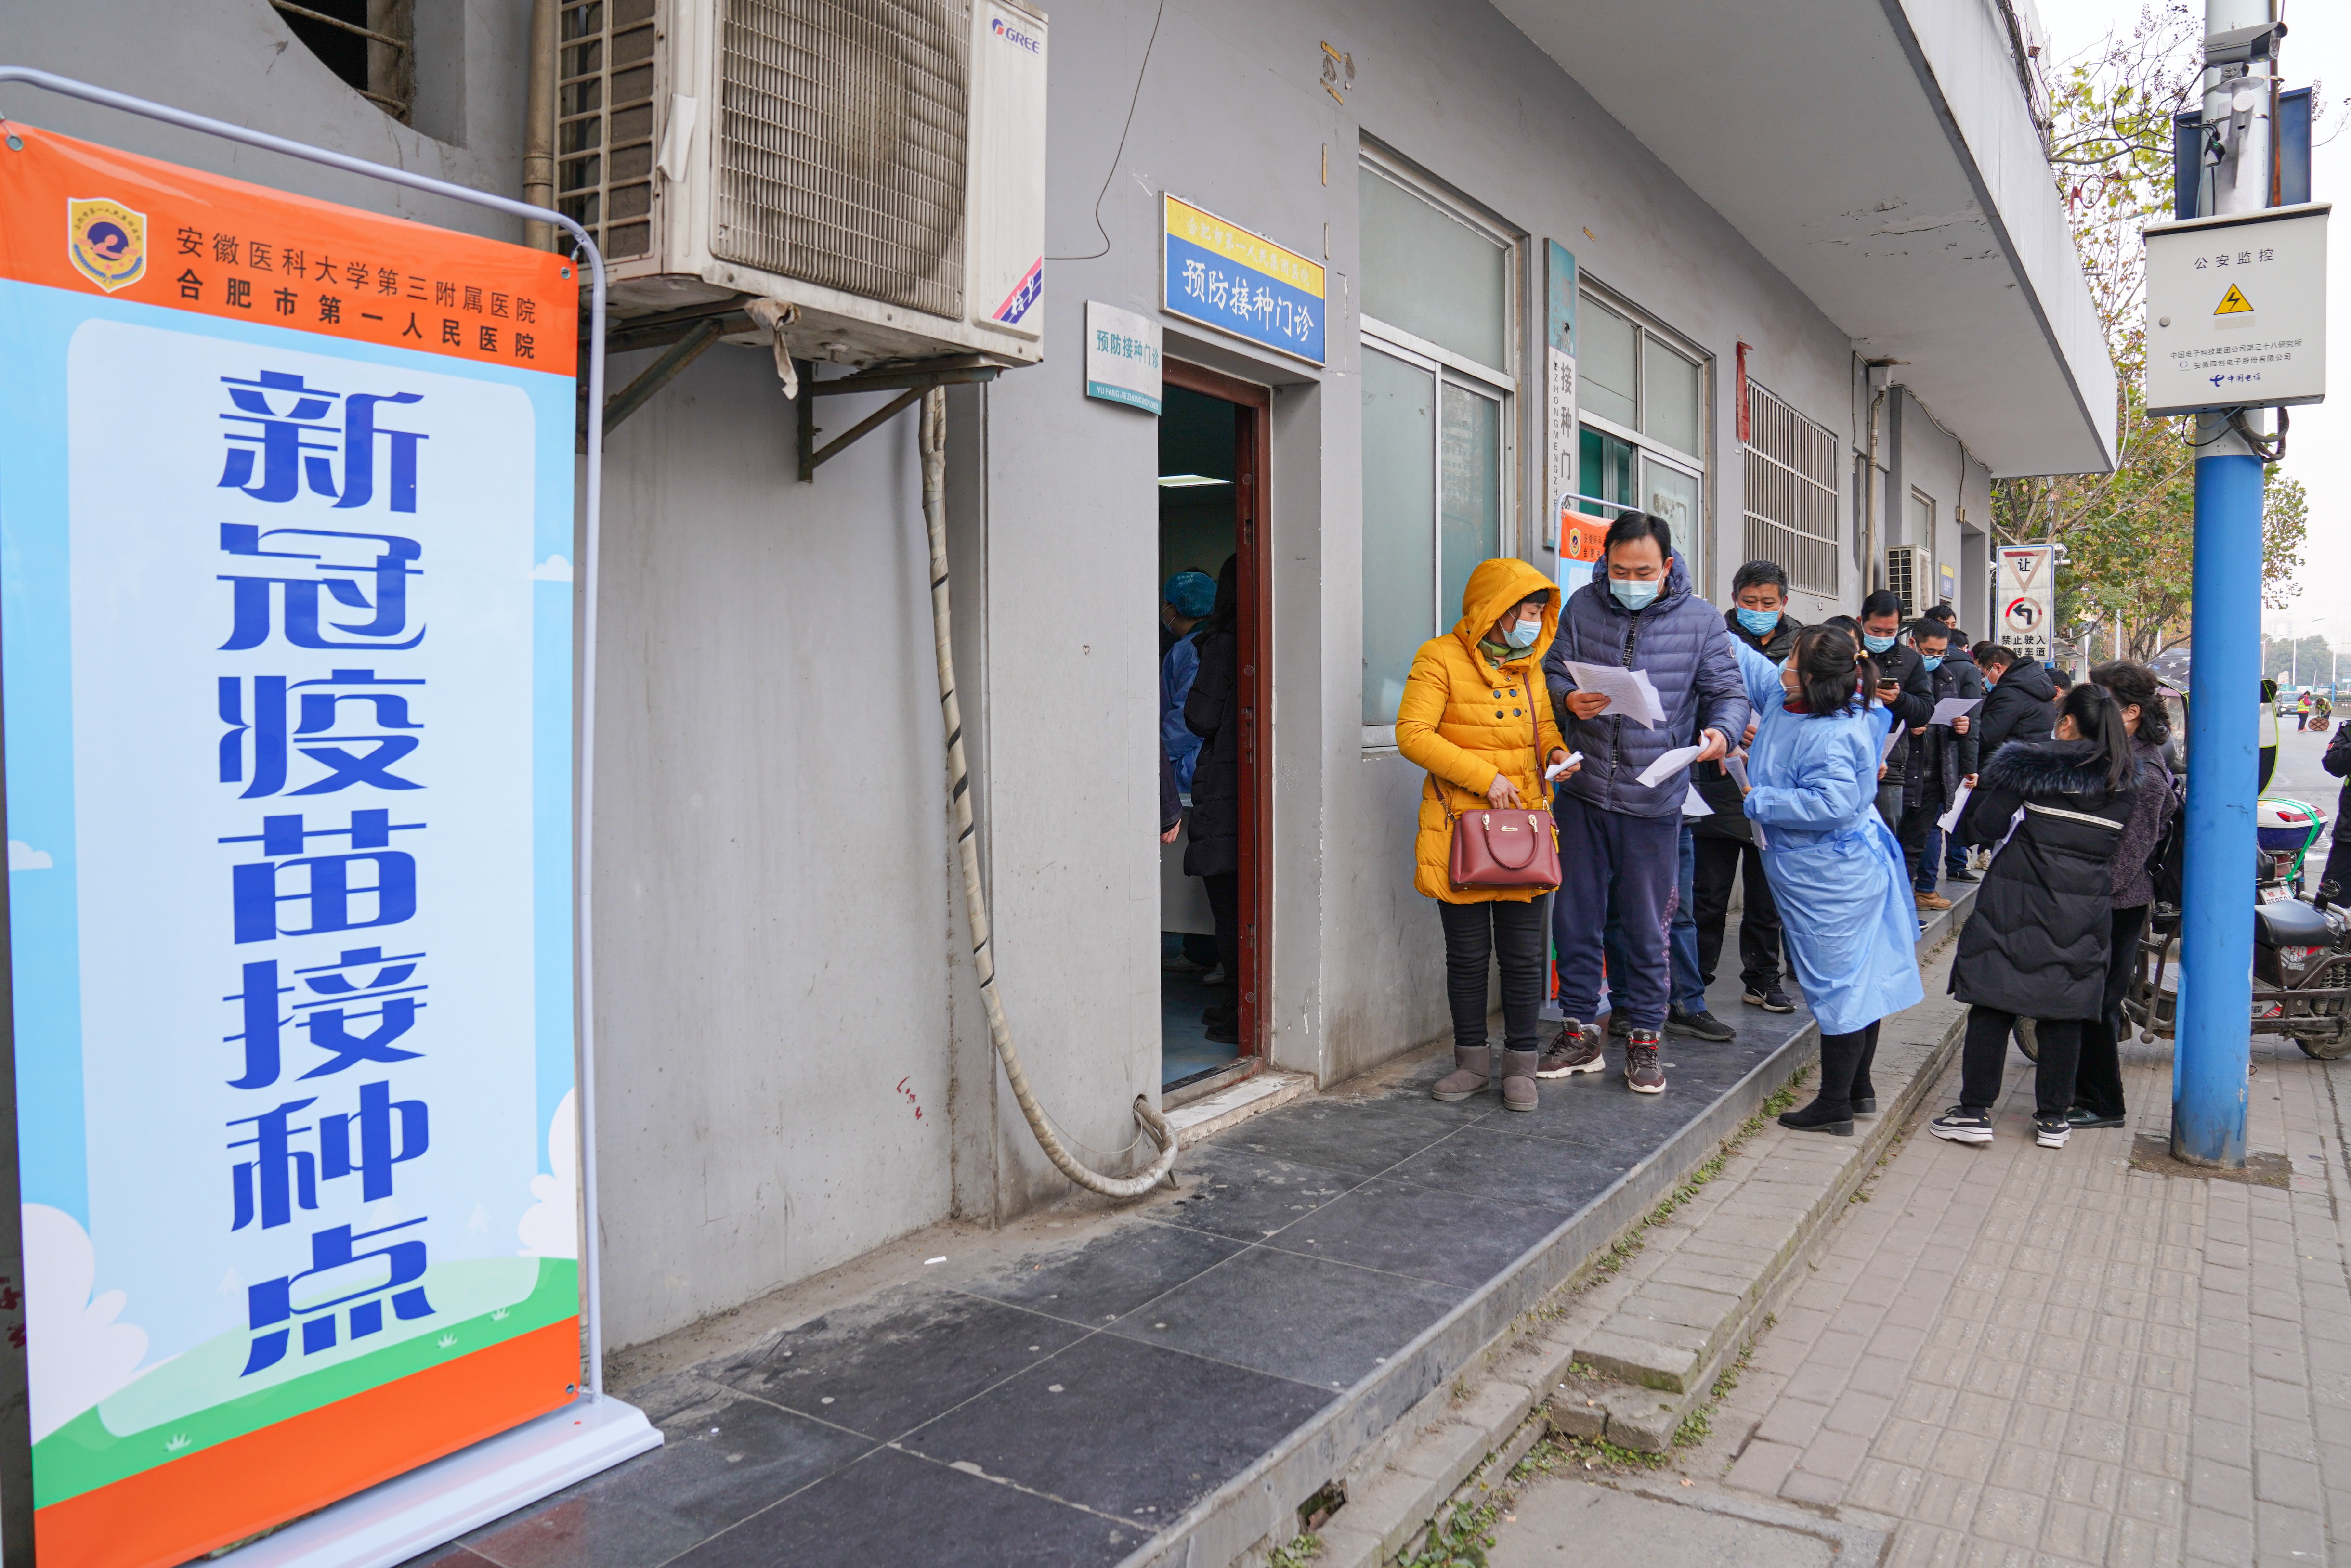 安徽省合肥市第一人民医院新冠疫苗接种点,市民正在排队接种